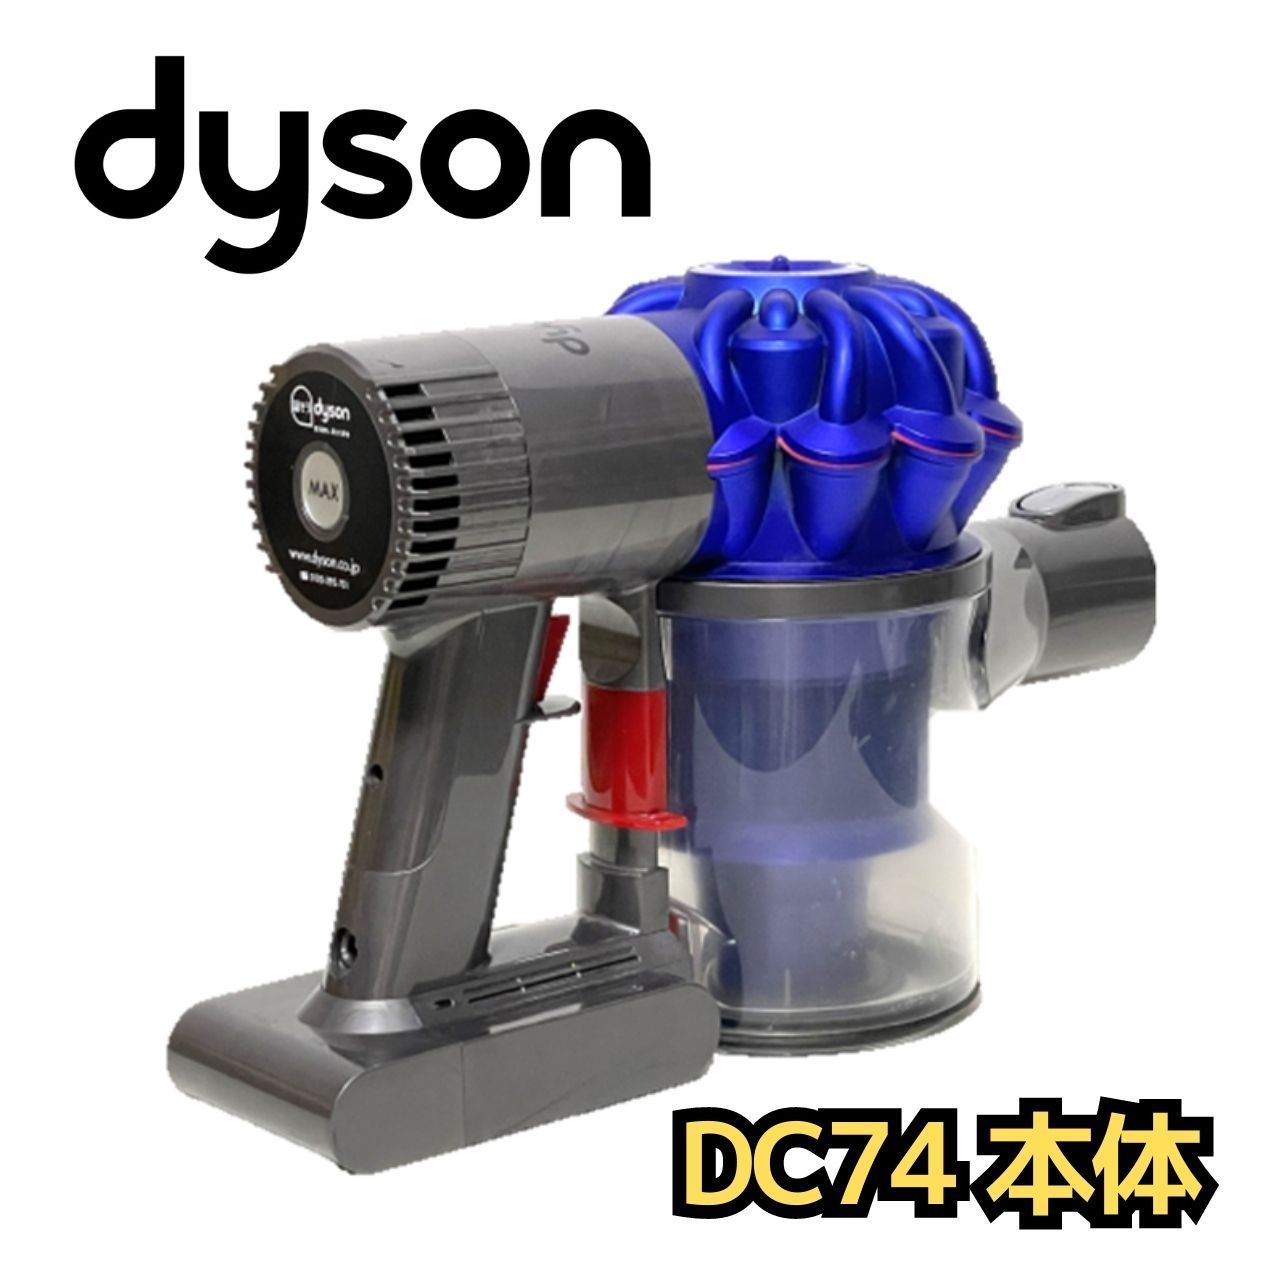 ダイソン DC74 MH 本体 dyson ハンディ 掃除機 - リユース宮城 - メルカリ